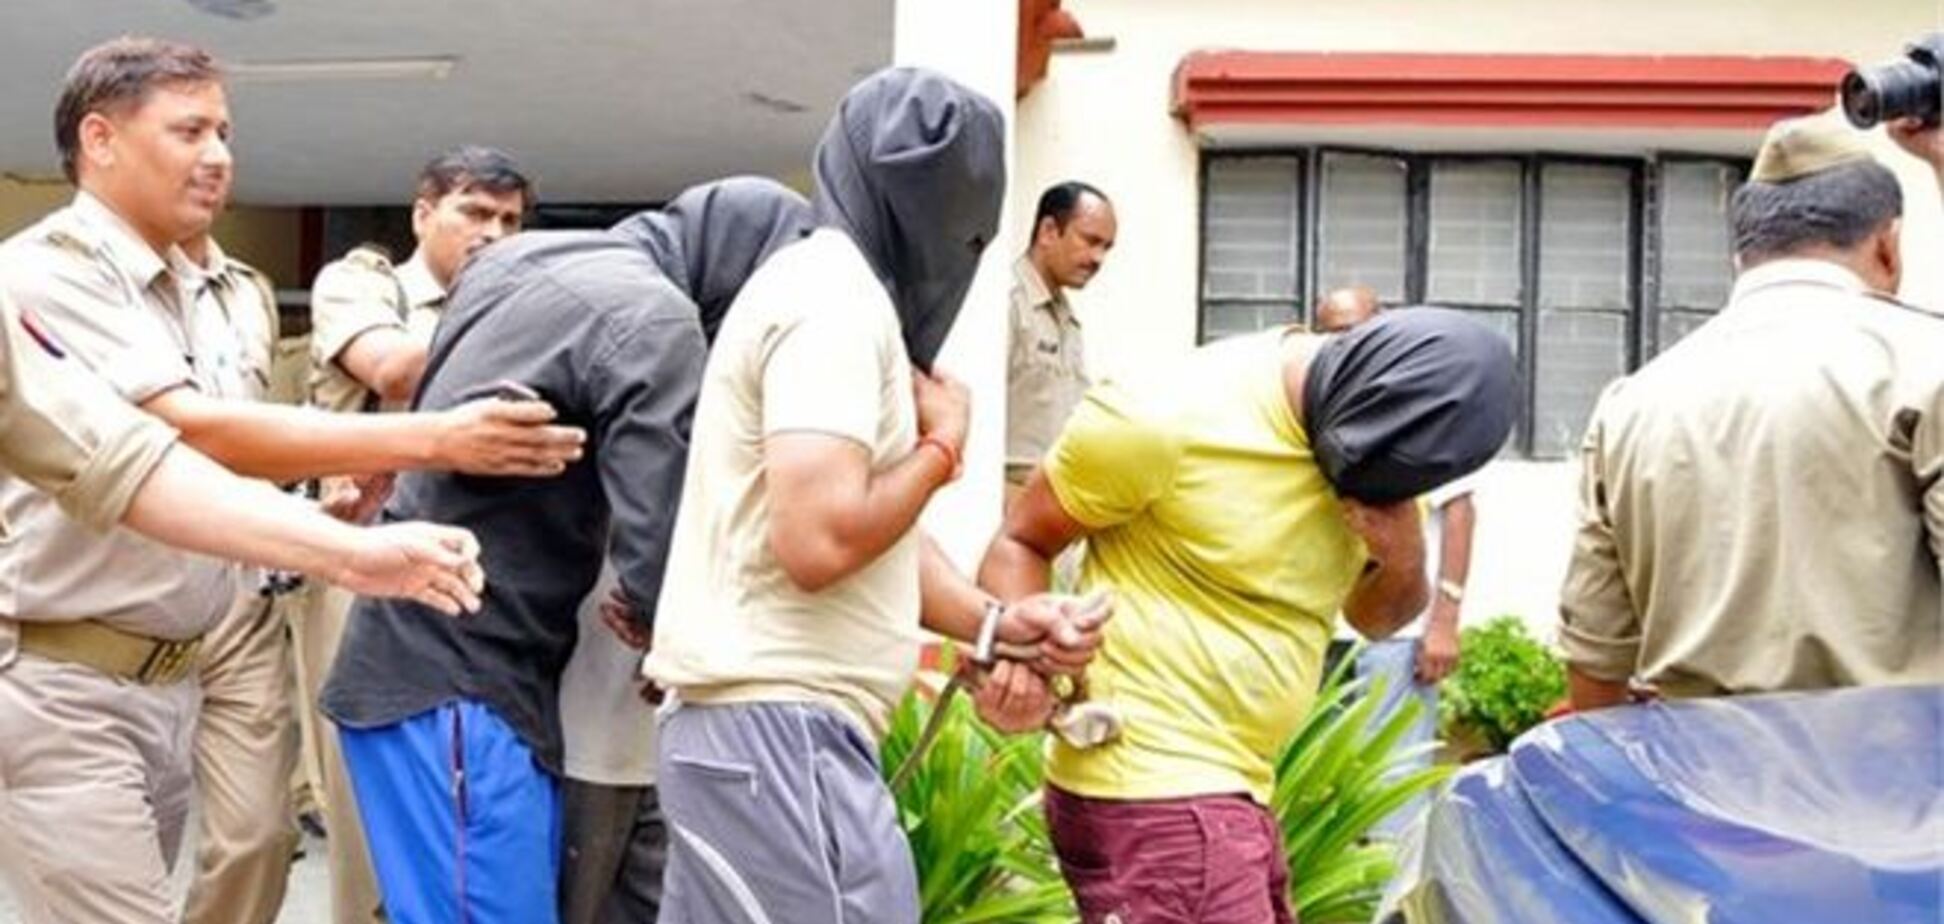 Участники группового изнасилования в Дели будут повешены - приговор